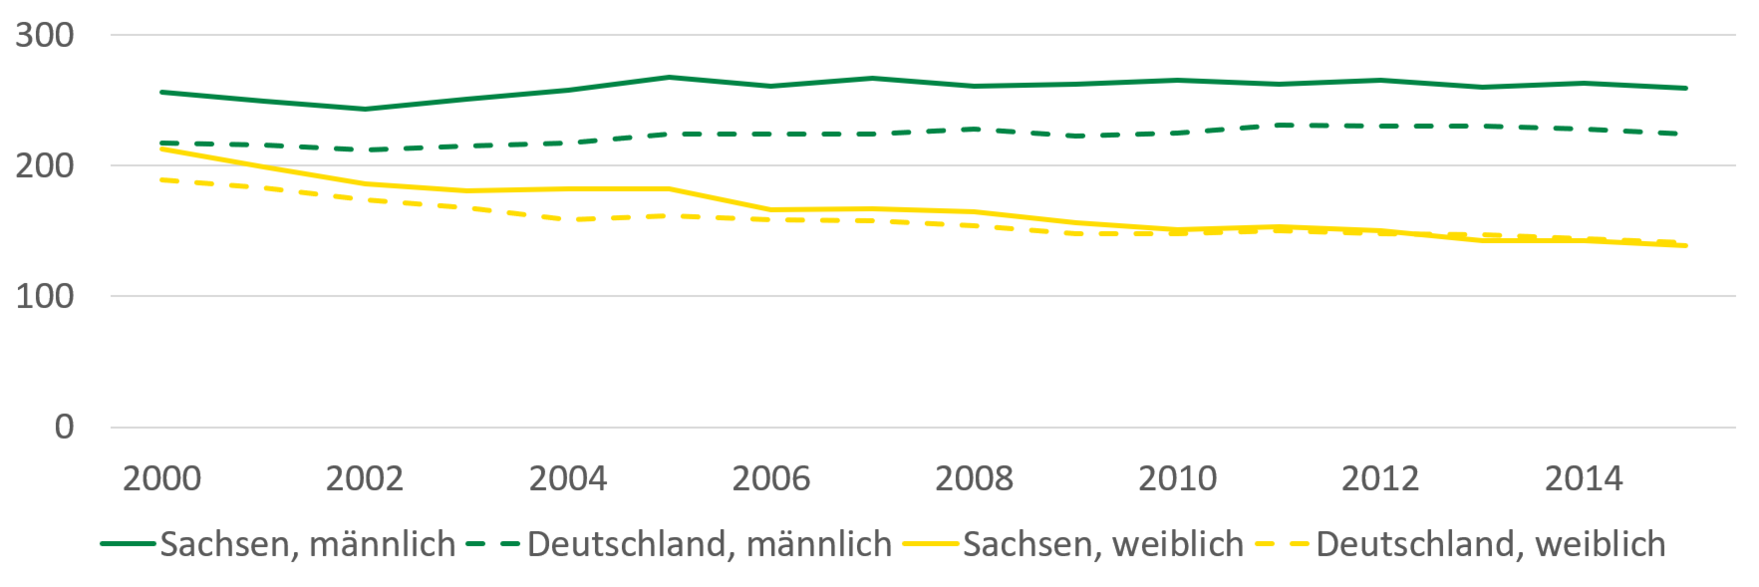 Krankenhausfälle aufgrund von Diabetes mellitus haben sich bei Frauen in Sachsen und Deutschland von 2000 bis 2014 ähnlich entwickelt und verzeichnen einem leichten Rückgang. Bei Männern gab es in Sachsen mehr Krankenhausfälle je 100.000 Einwohner als im bundesweiten Durchschnitt.